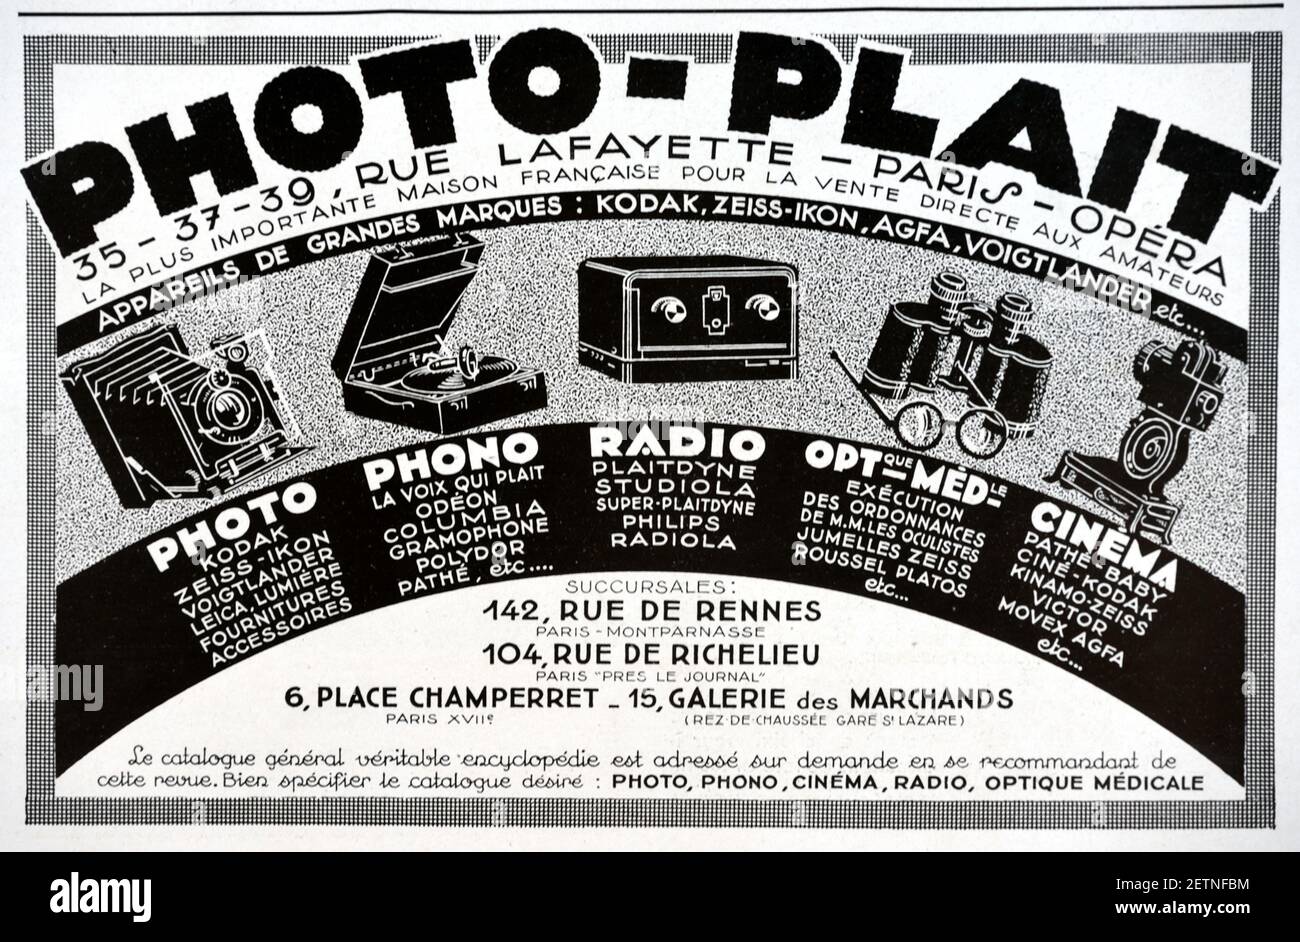 Publicité, publicité ou publicité vintage pour photographes Boutique photo-Plait Paris France 1931. L'illustration montre une caméra pliante à soufflet, un lecteur d'enregistrement, une radio, des lunettes, des jumelles et une caméra de cinéma. Banque D'Images